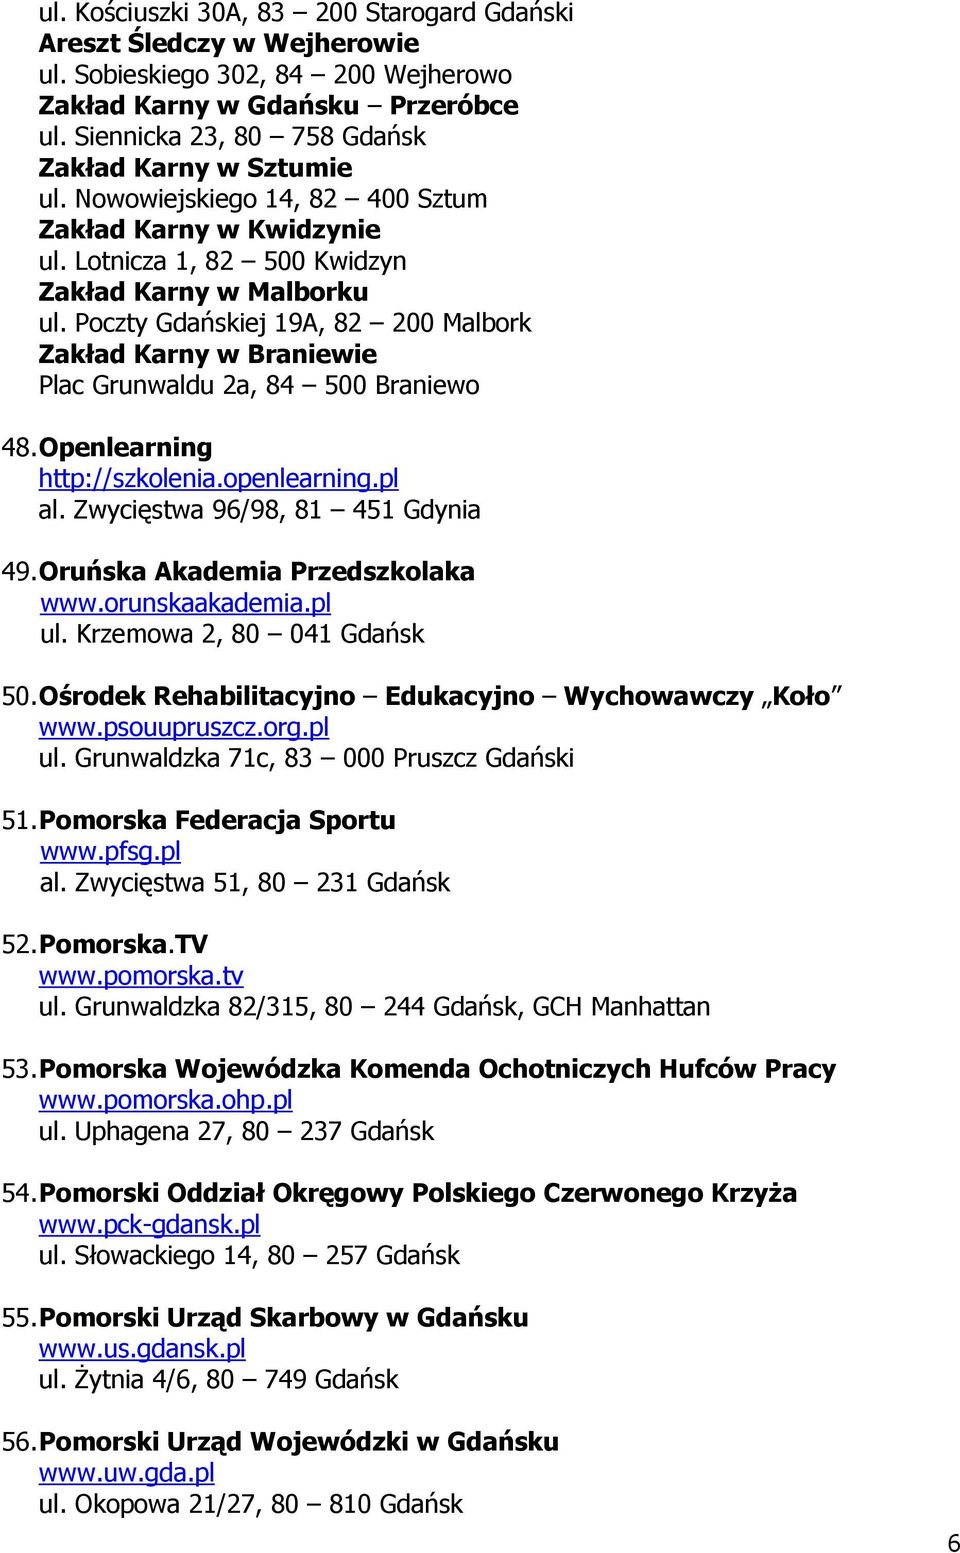 Poczty Gdańskiej 19A, 82 200 Malbork Zakład Karny w Braniewie Plac Grunwaldu 2a, 84 500 Braniewo 48. Openlearning http://szkolenia.openlearning.pl al. Zwycięstwa 96/98, 81 451 Gdynia 49.